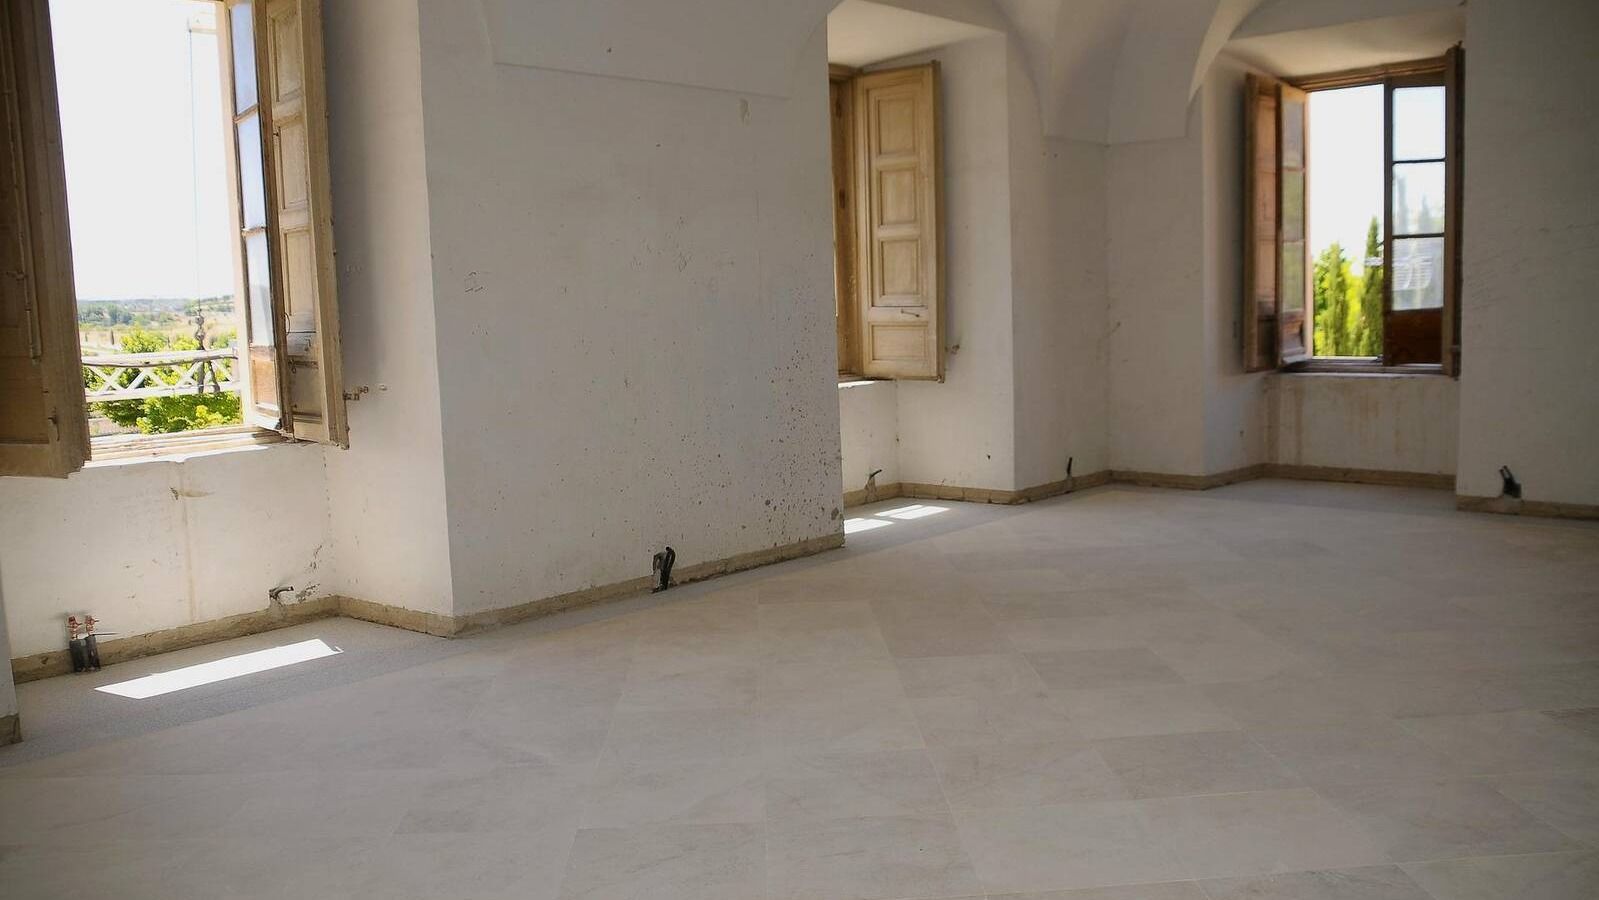 La restauración del Palacio continúa con la instalación de un nuevo solado de piedra caliza en las estancias contiguas a la capilla